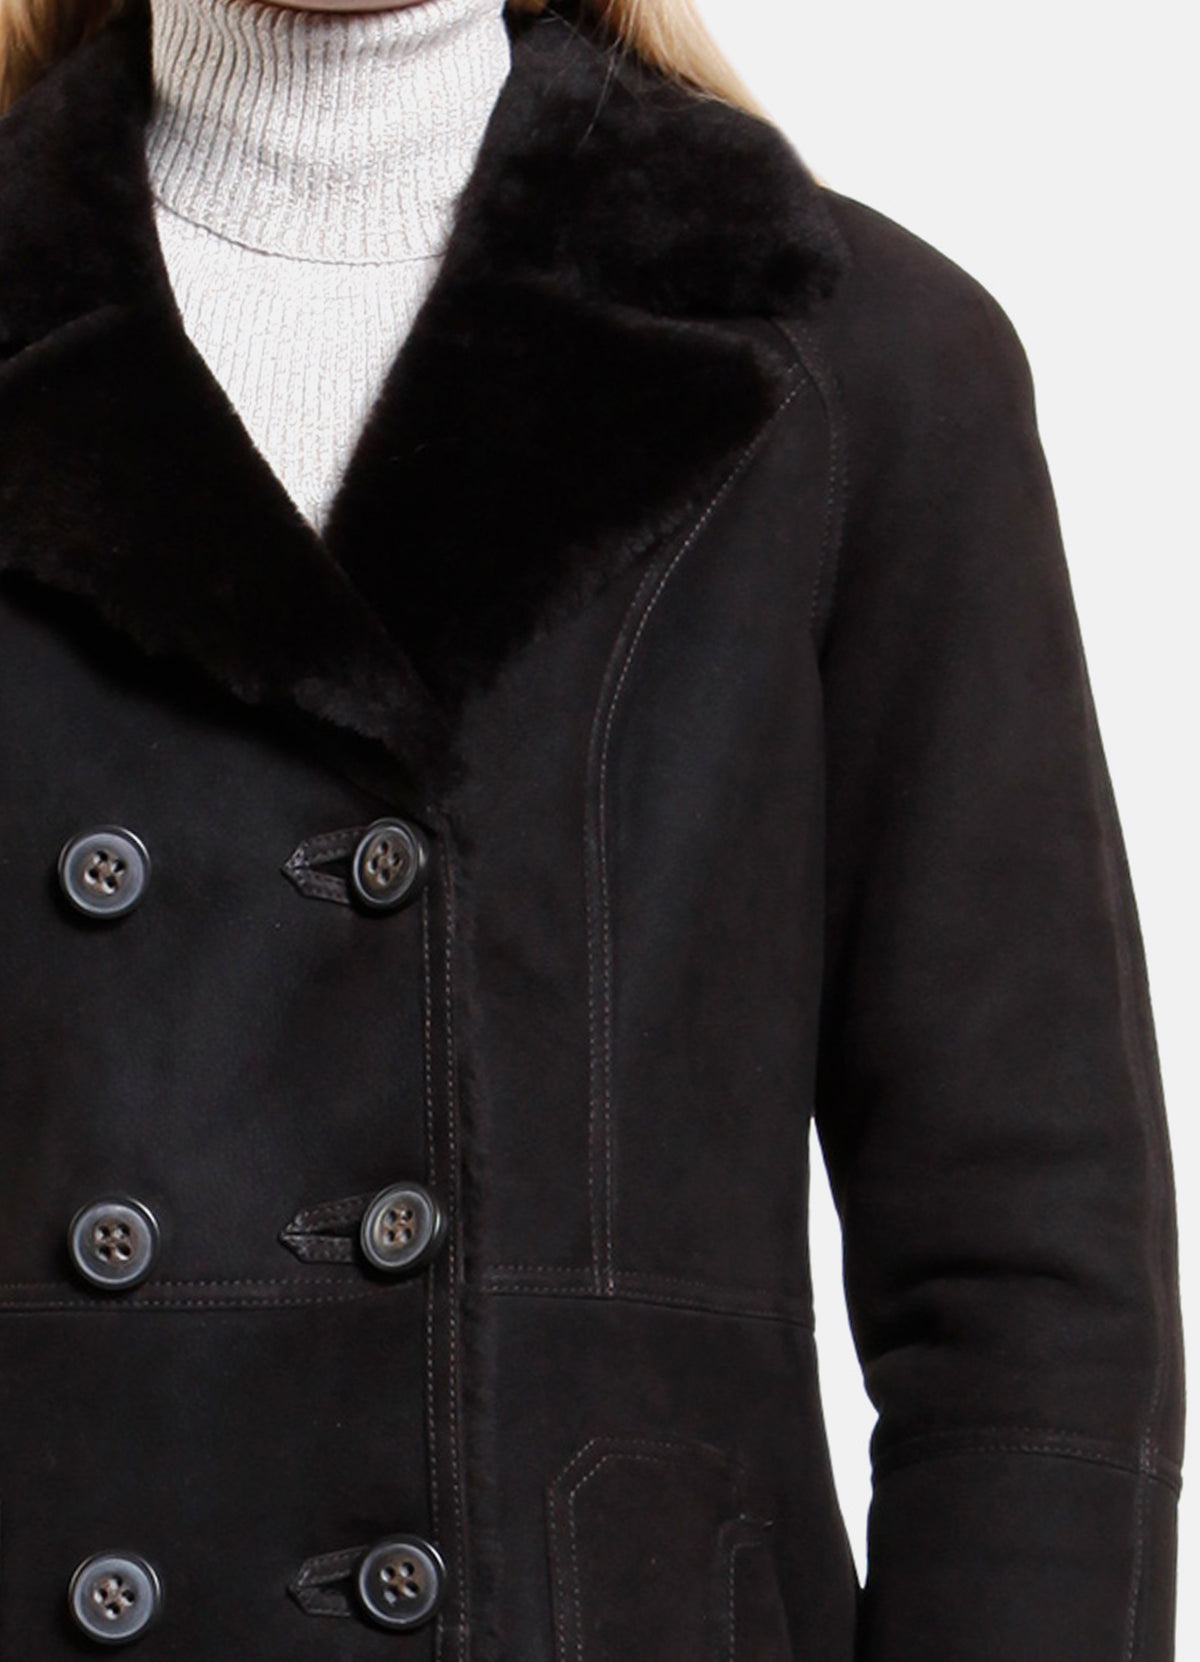 Womens Iconic Black Shearling Leather Jacket | Elite Jacket